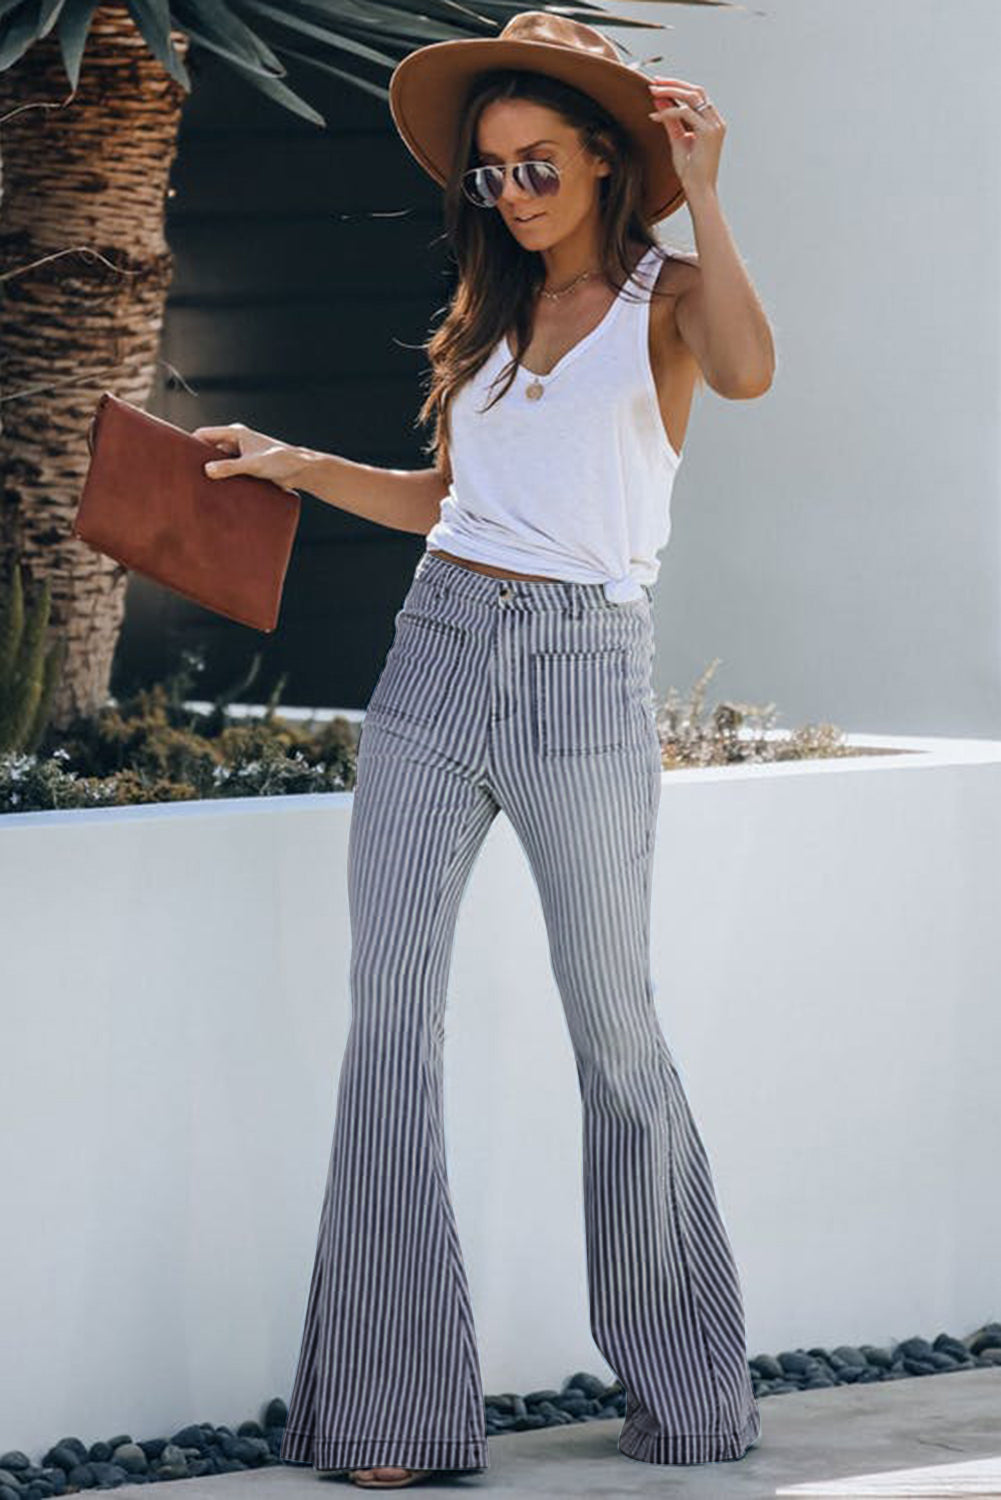 Pocketed Striped Bell Bottom Denim Pants Jeans JT's Designer Fashion